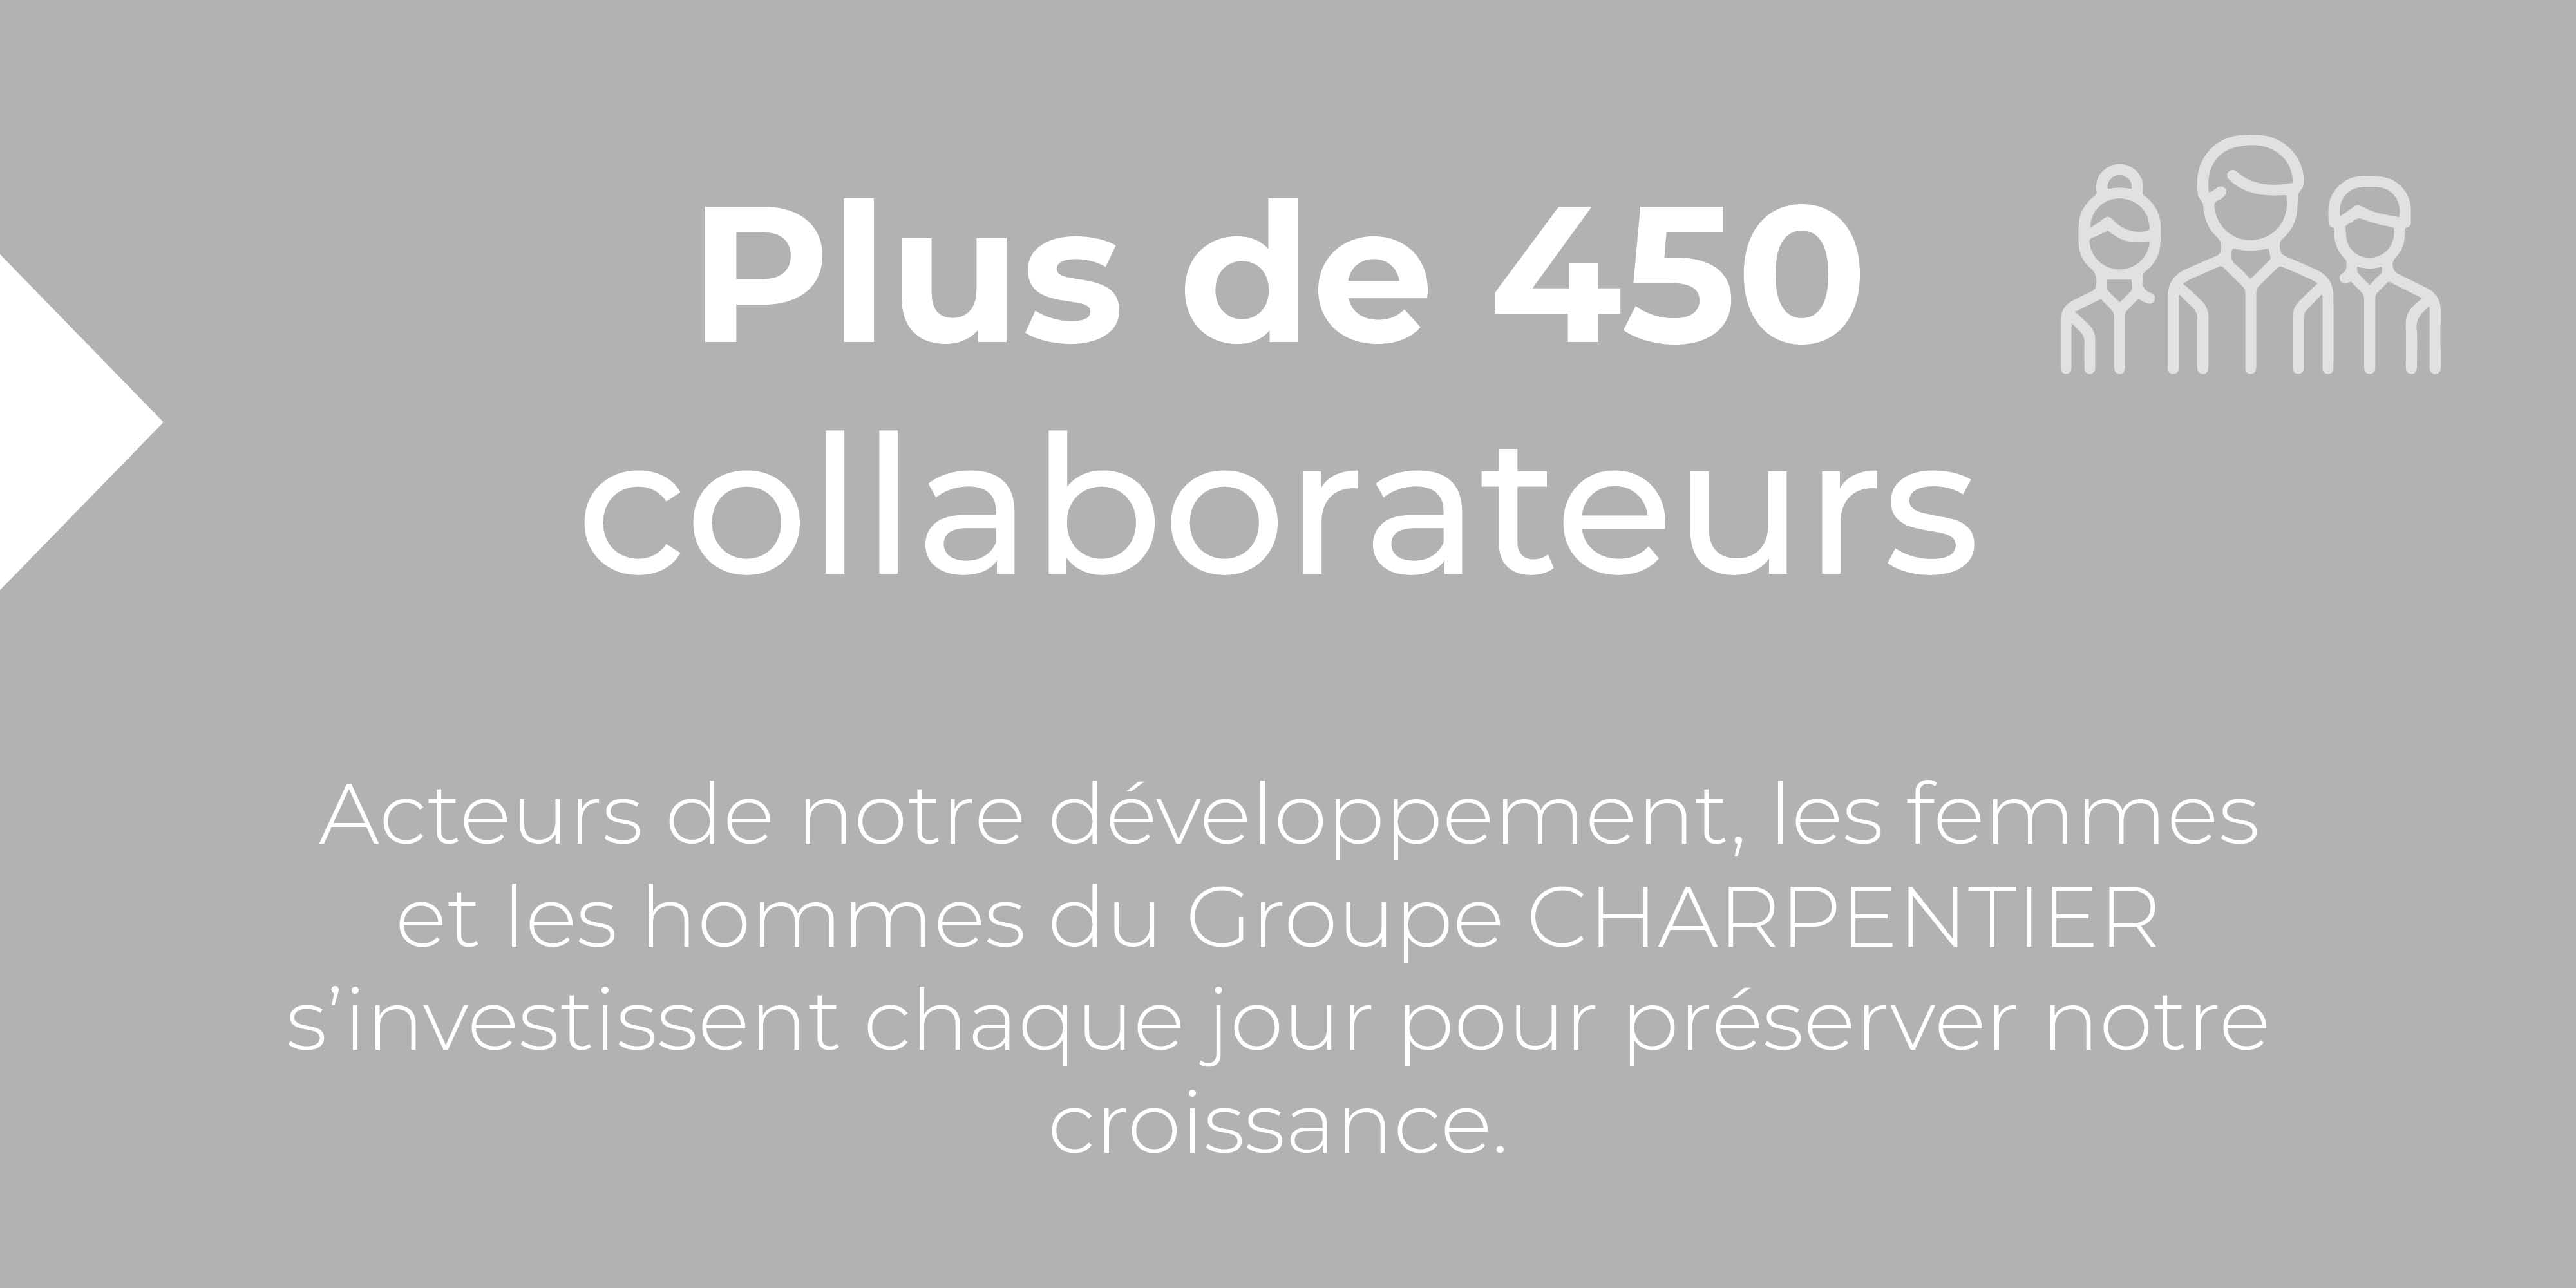 450 collaborateurs au Groupe Charpentier